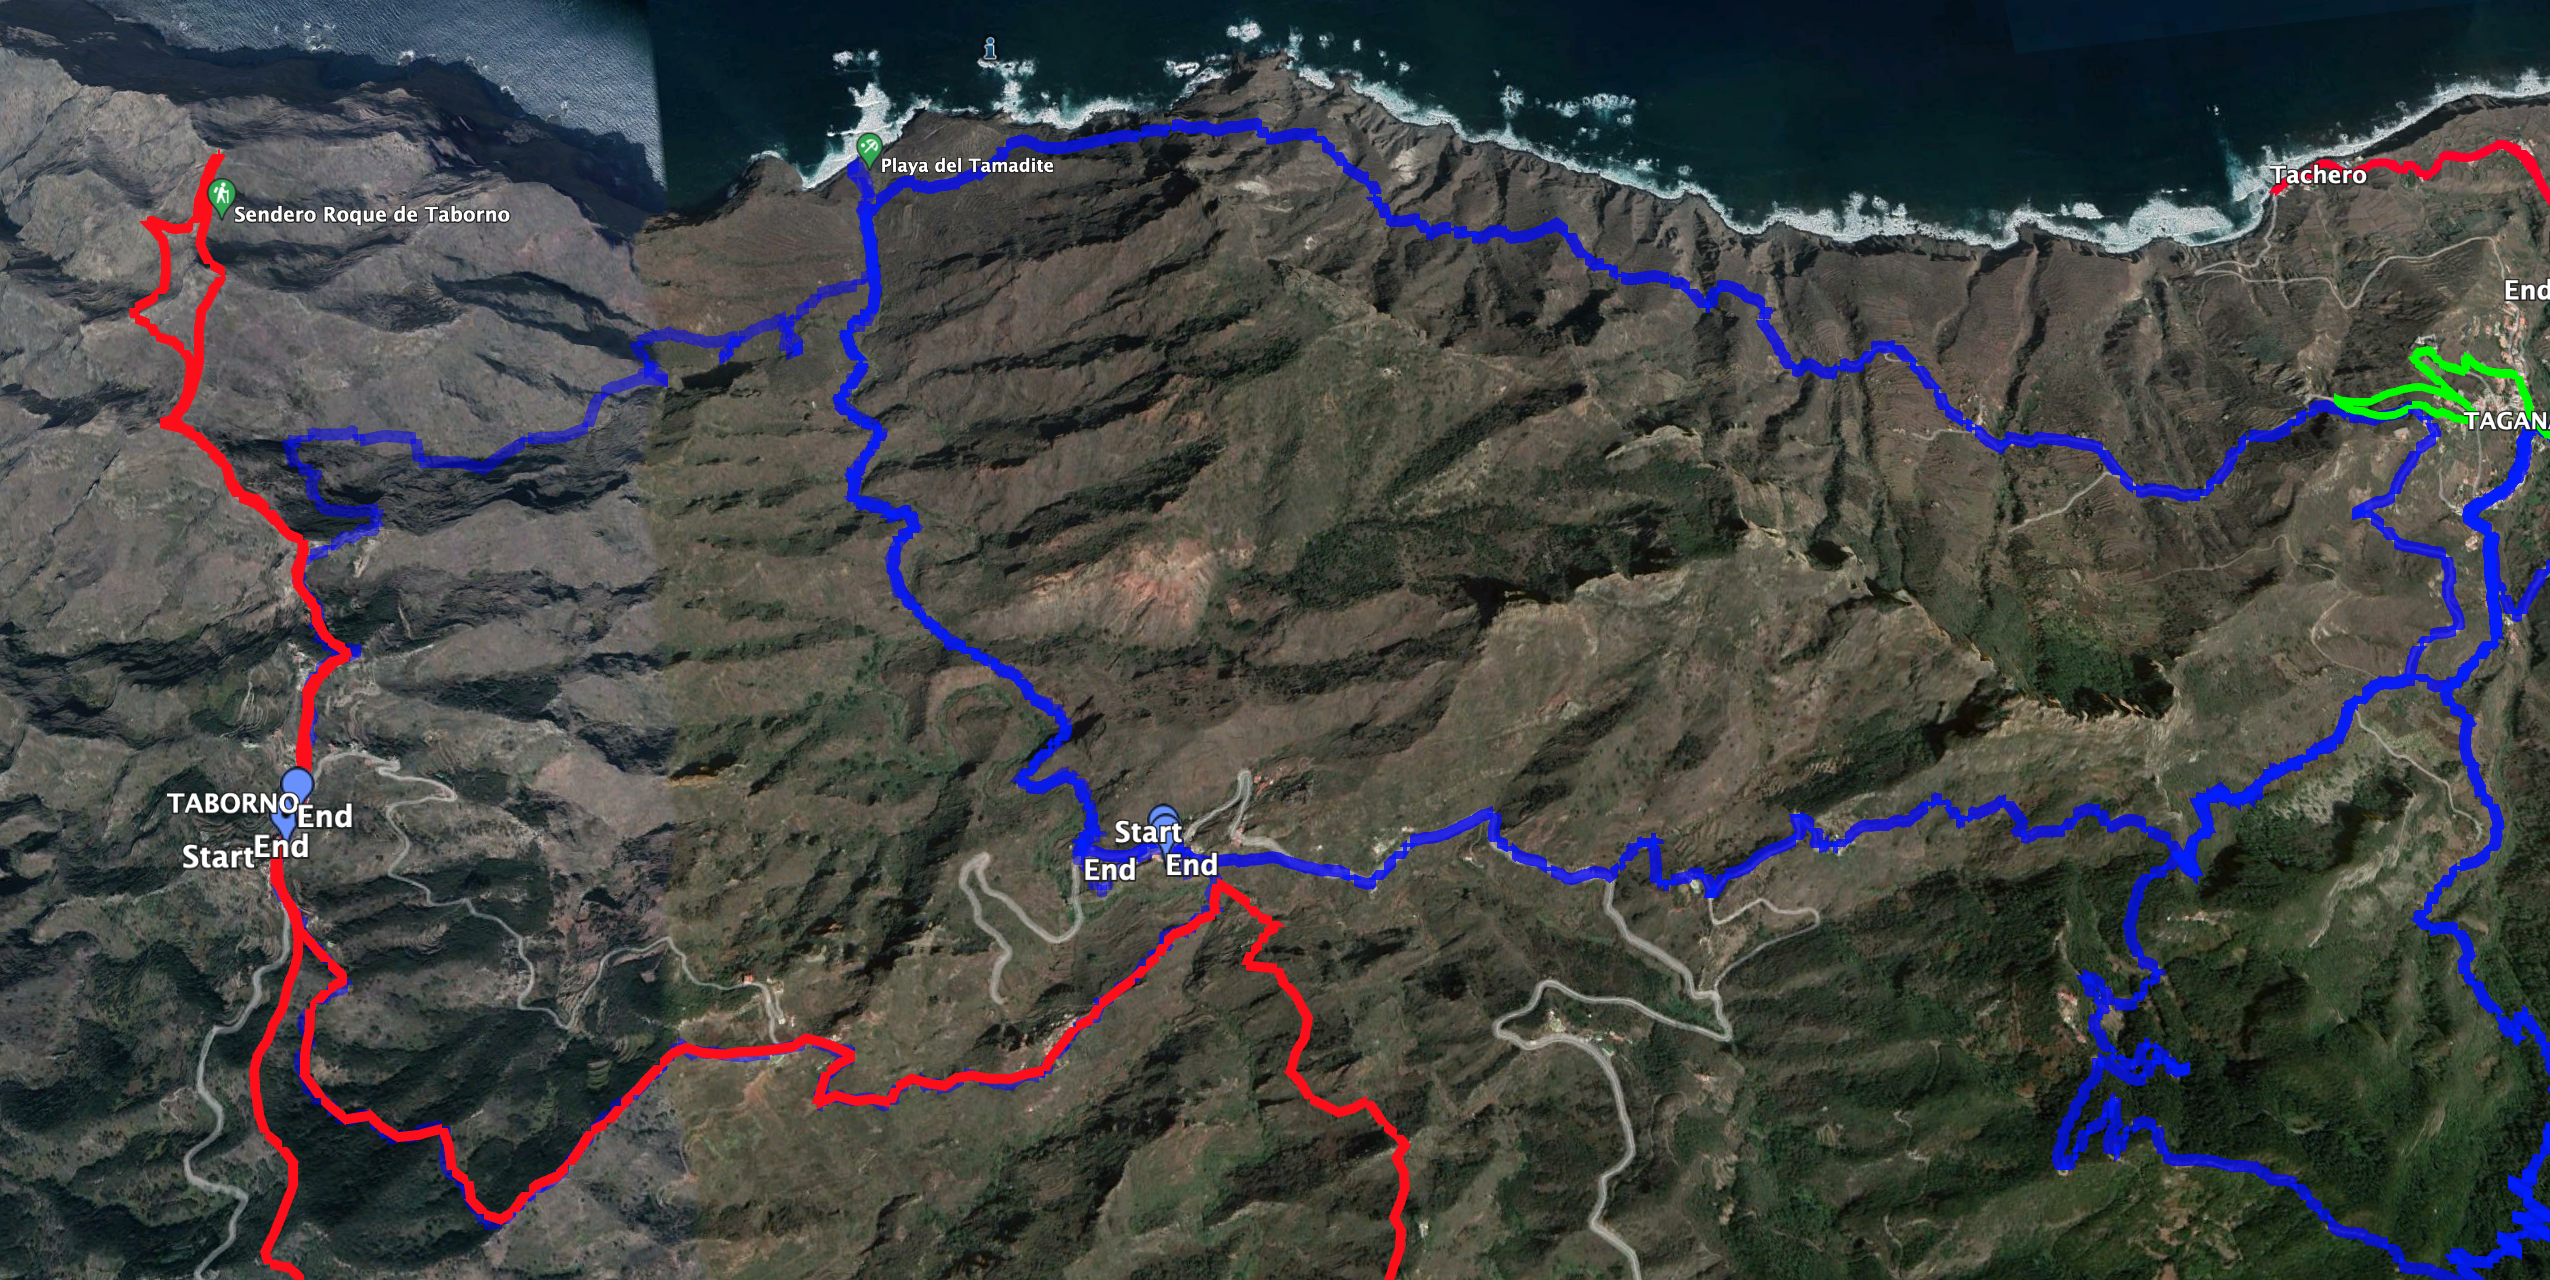 Ein Teil der Wanderung verläuft parallel zu der Wanderung Taborno – Afur – Playa Tamadite. Auch die Rundtour Afur – Playa Tamadite – Taganana grenzt an diese Wanderung (blaue Tracks).